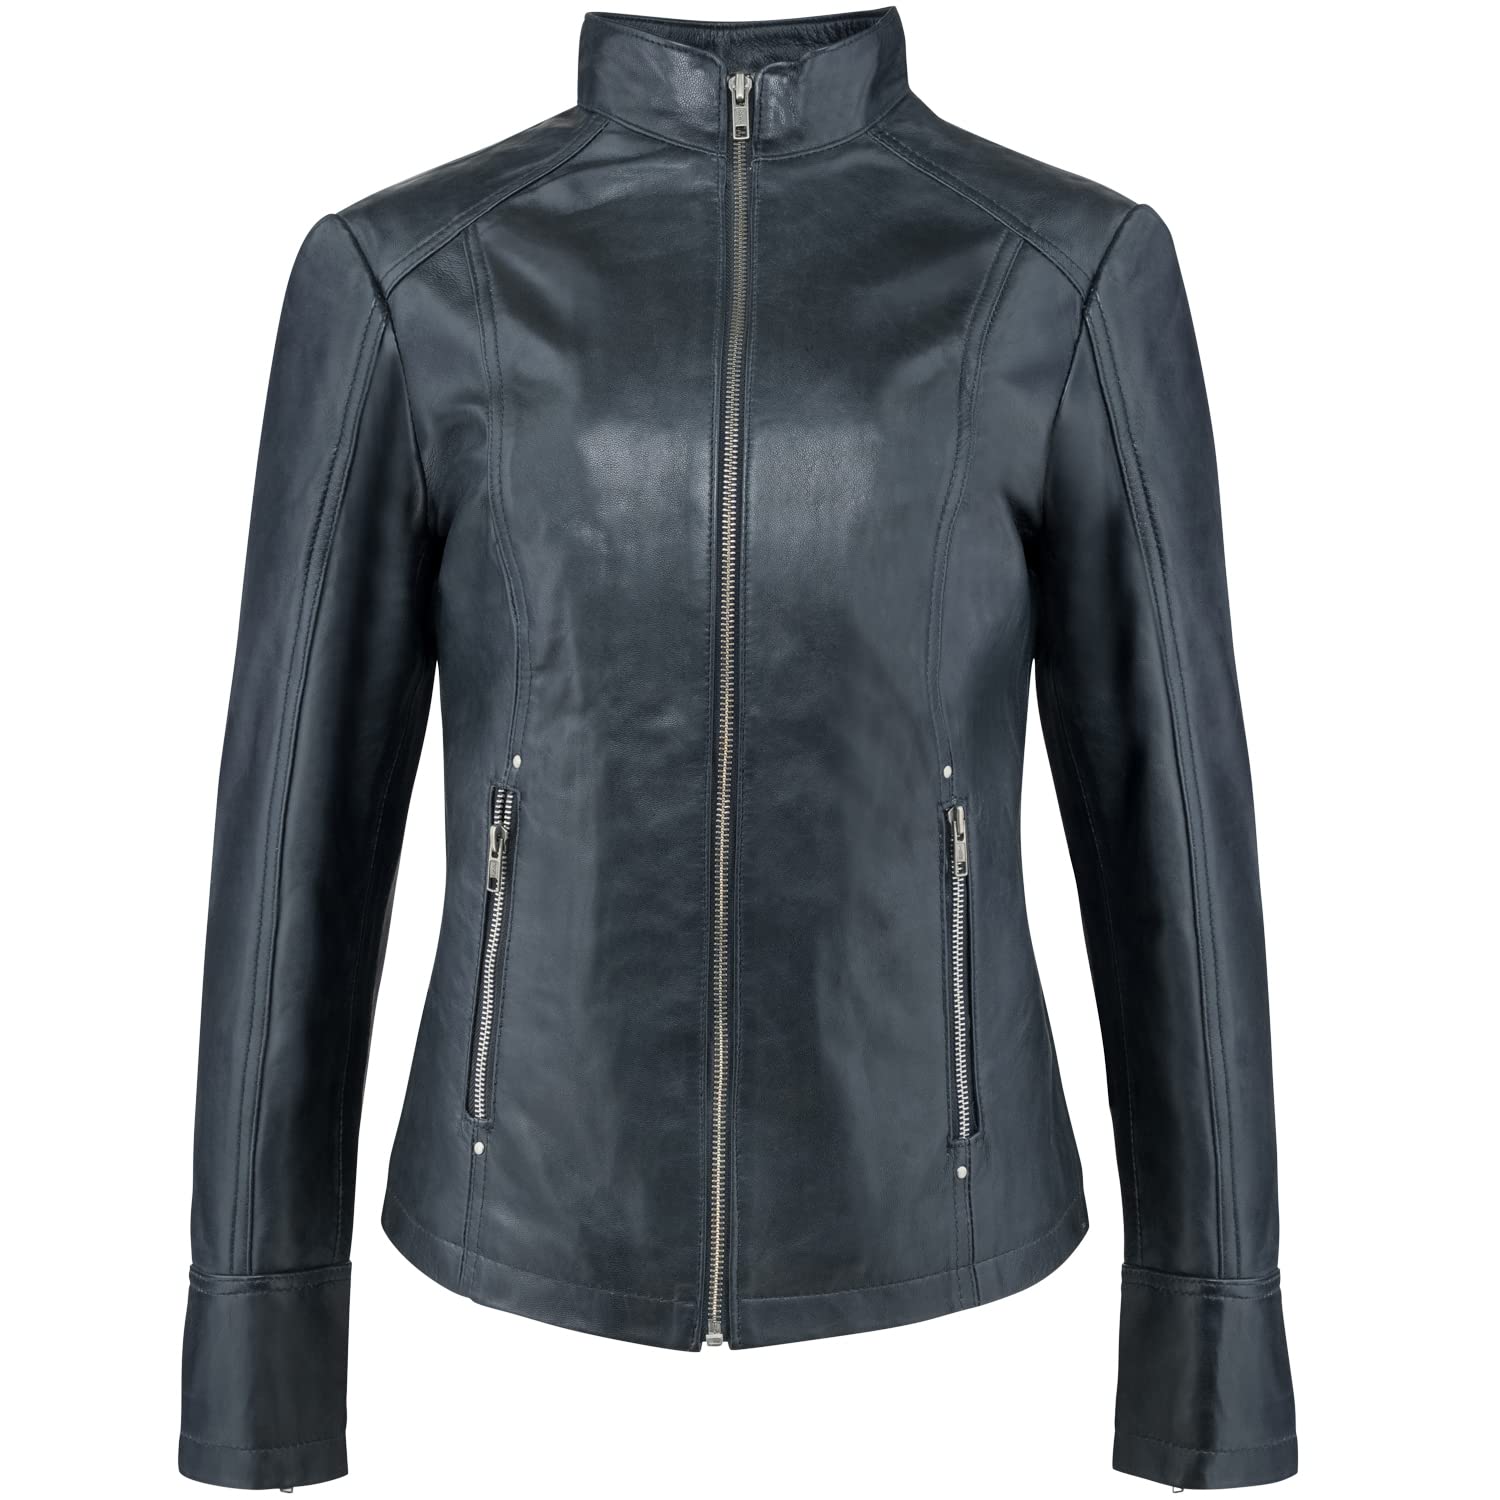 Urban Leather Fashion Lederjacke - Rt01, Schwarz, Größe 42, XL von URBAN 5884